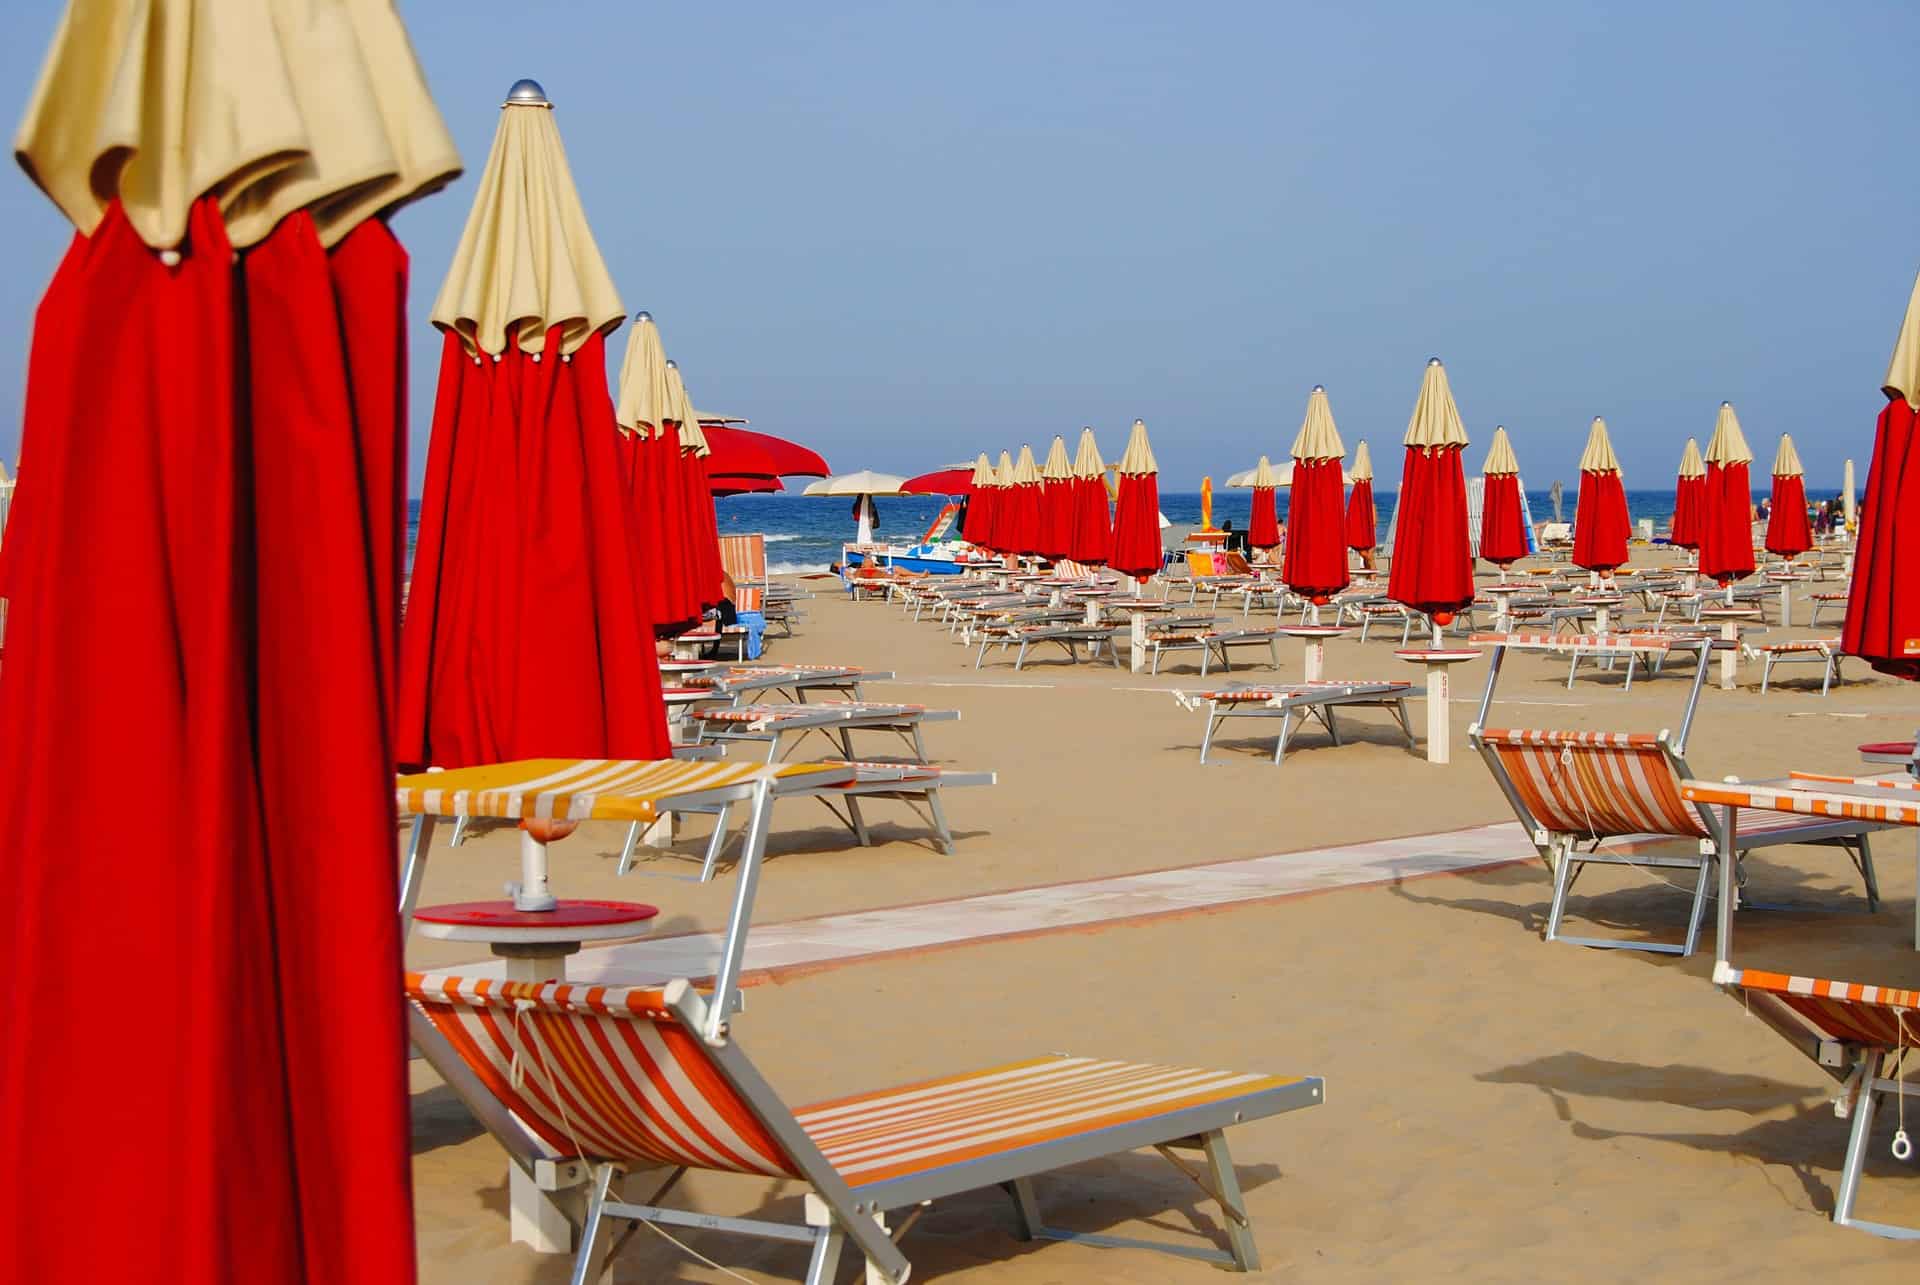 Misano_Adriatico_vacanze_riviera romagnola_mare_spiaggia